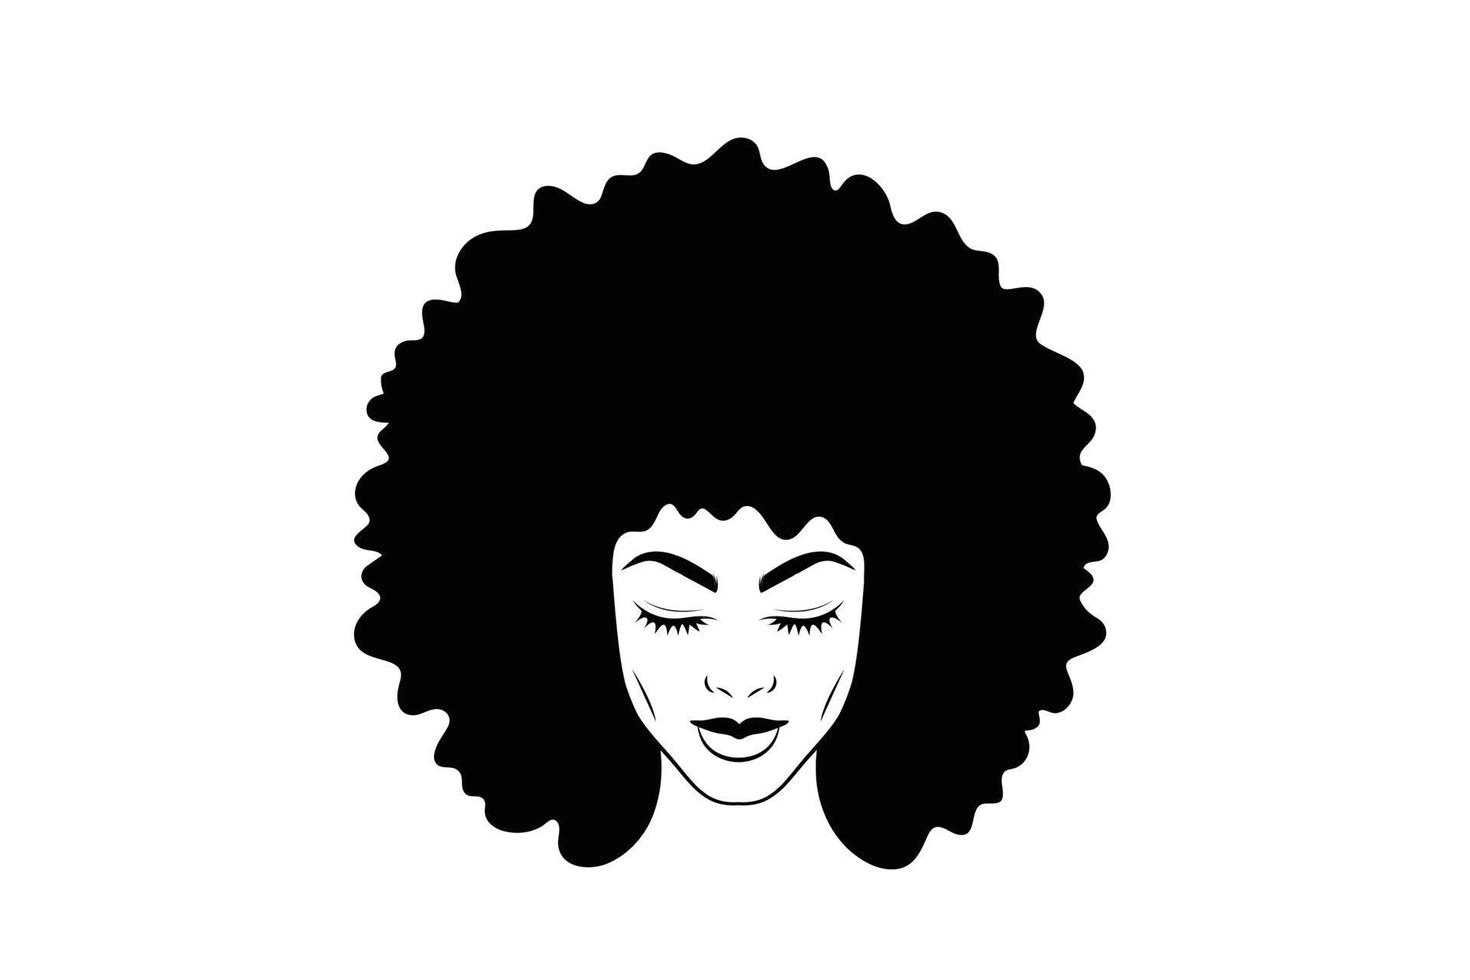 menina afro-americana negra mulher linda senhora cabeça rosto vetor silhueta desenho ilustração isolada no fundo branco